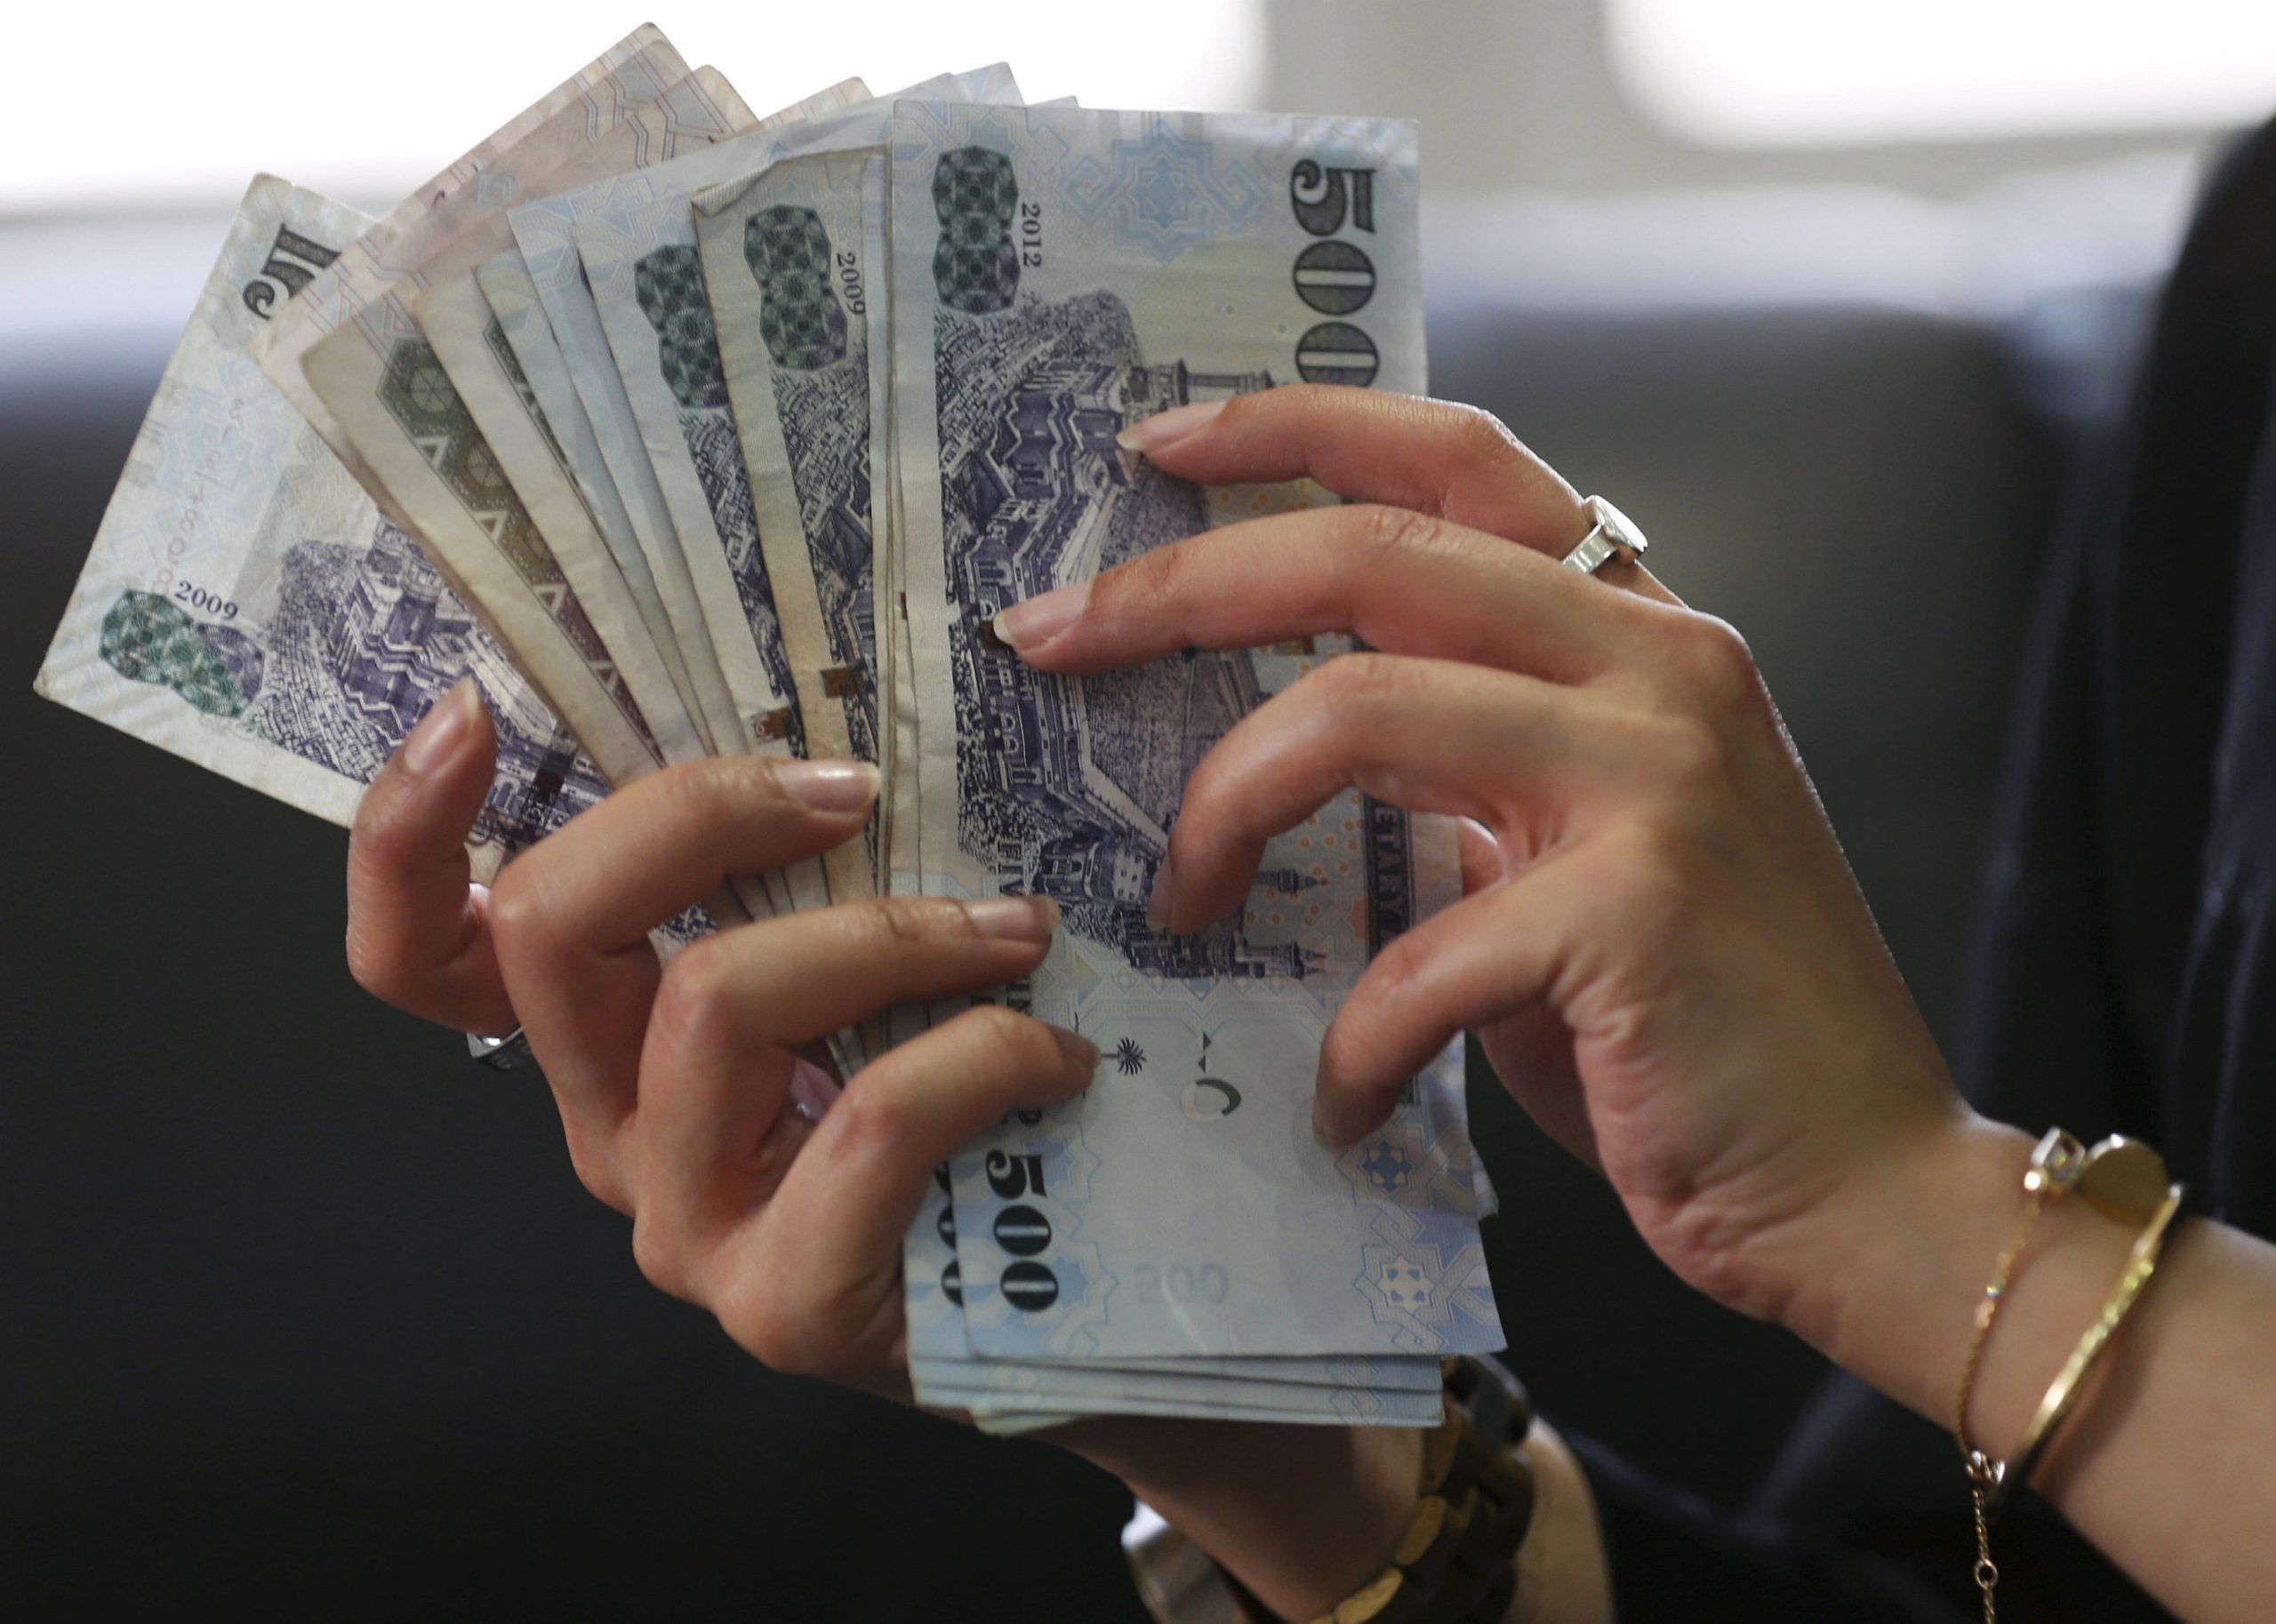 تمويل شخصي بدون ضامن يبدأ من 7000 ريال سعودي ميسر للنساء والرجال والمتقاعدين بنك البلاد